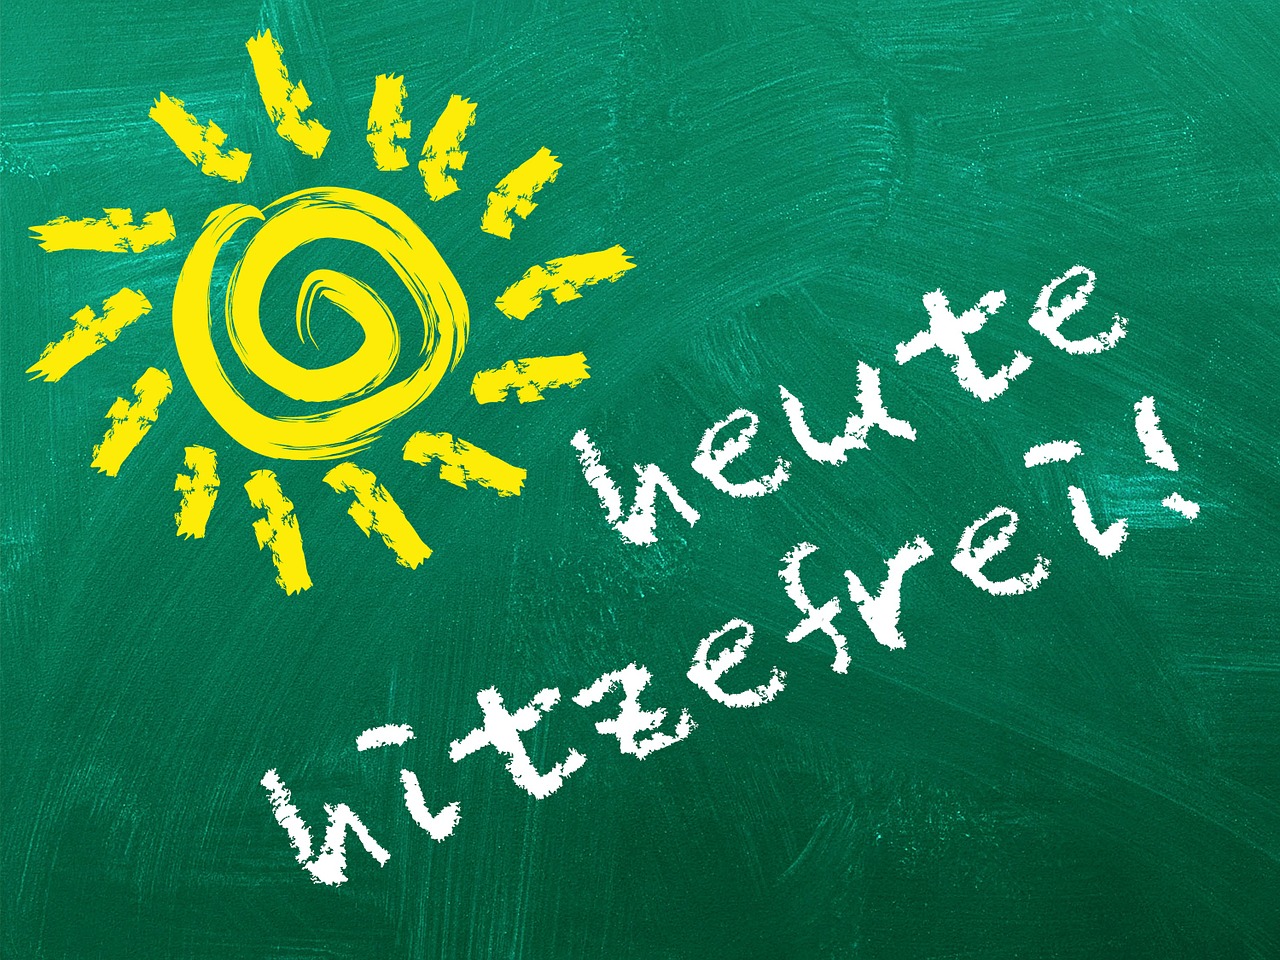 Γερμανία: Υπάρχει “Hitzefrei” για τους εργαζόμενους; Τι πρέπει να κάνει ο εργοδότης όταν επικρατούν υψηλές θερμοκρασίες